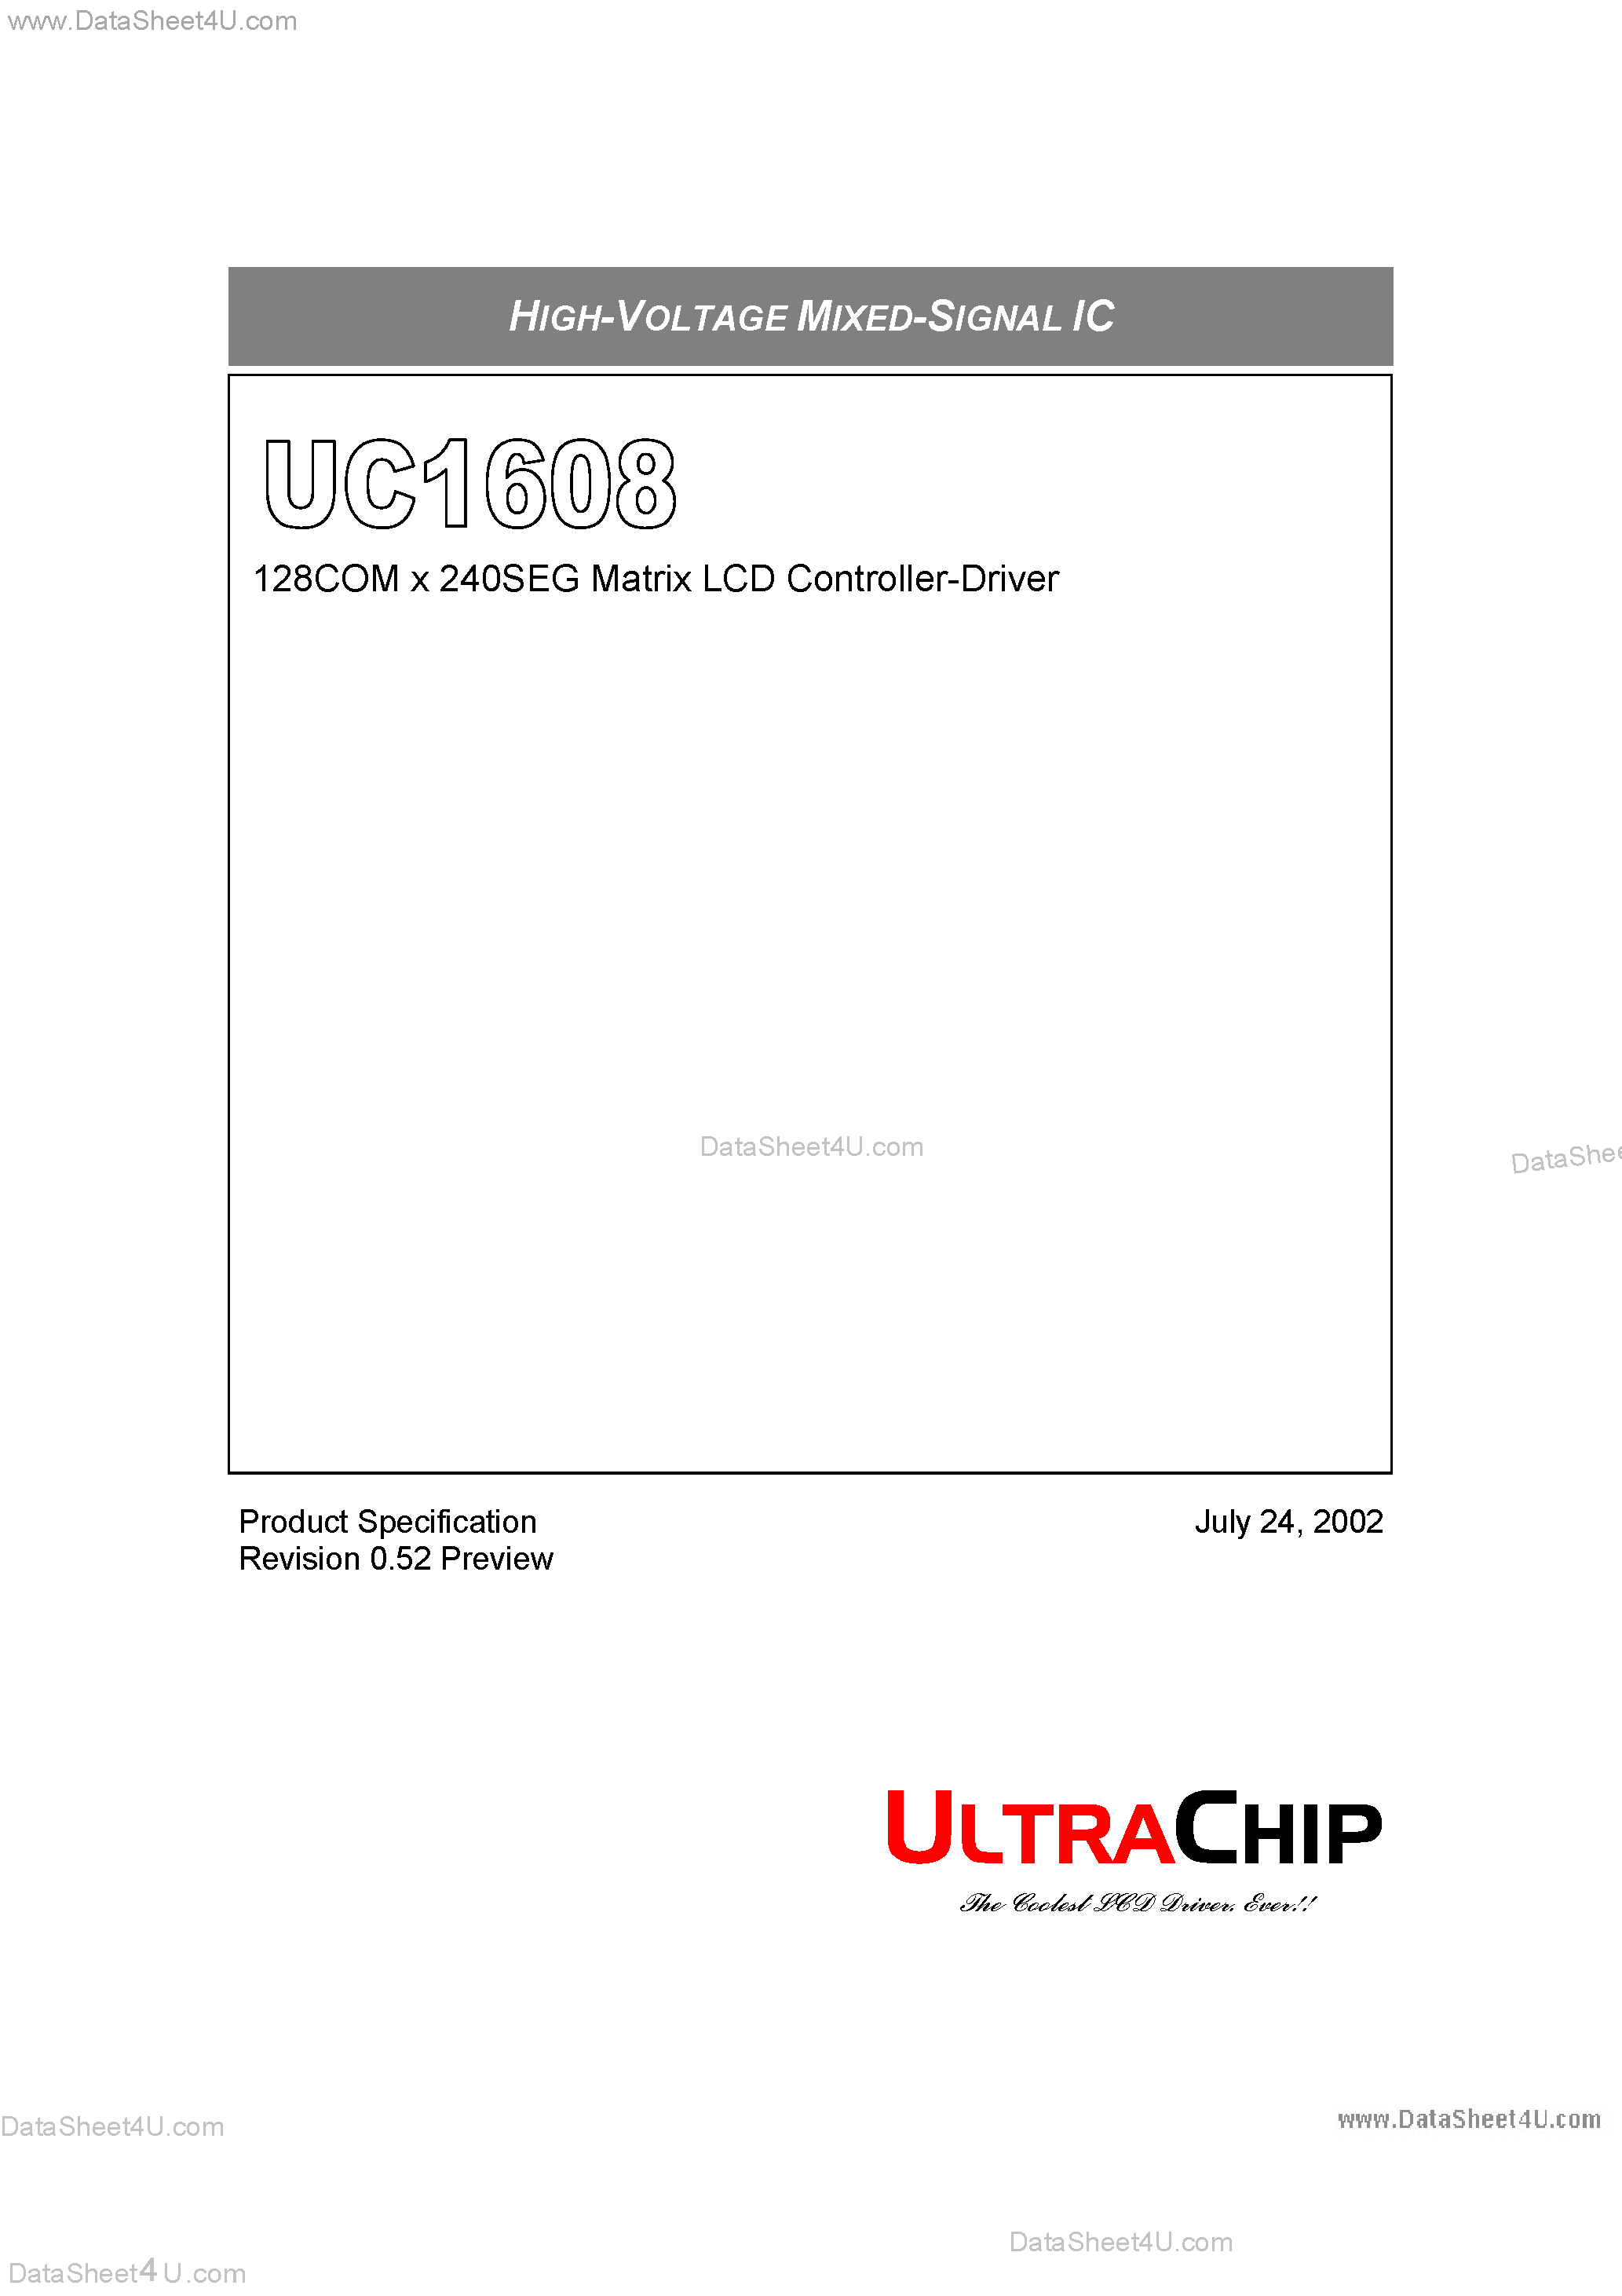 Даташит UC1608 - 128COM x 240SEG Matrix LCD Controller-Driver страница 1